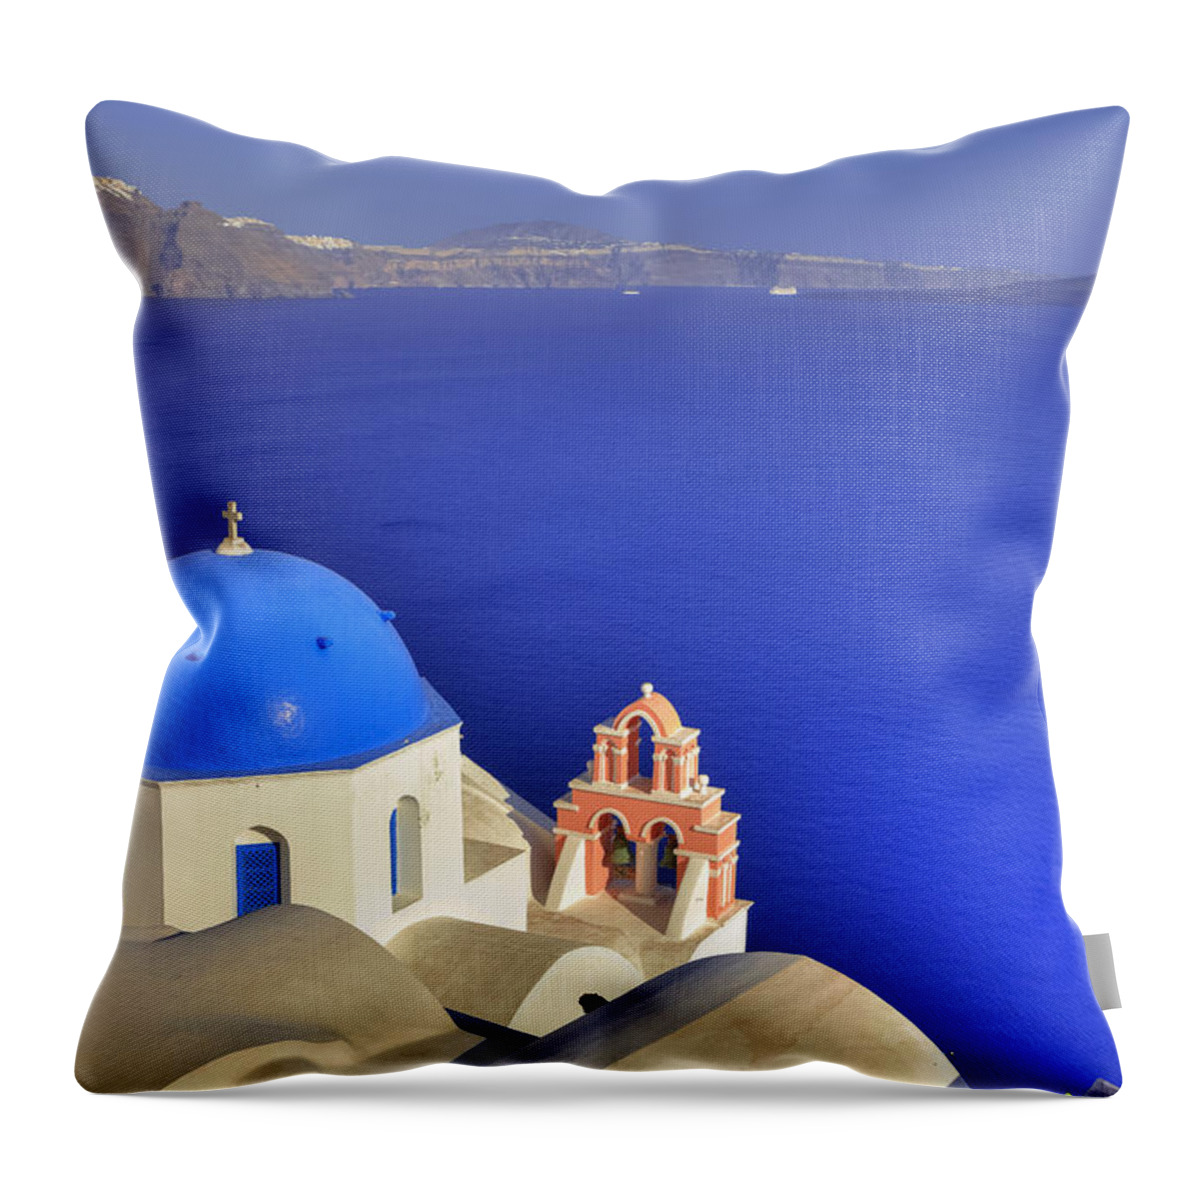 Oia Throw Pillow featuring the photograph Oia - Santorini #4 by Joana Kruse